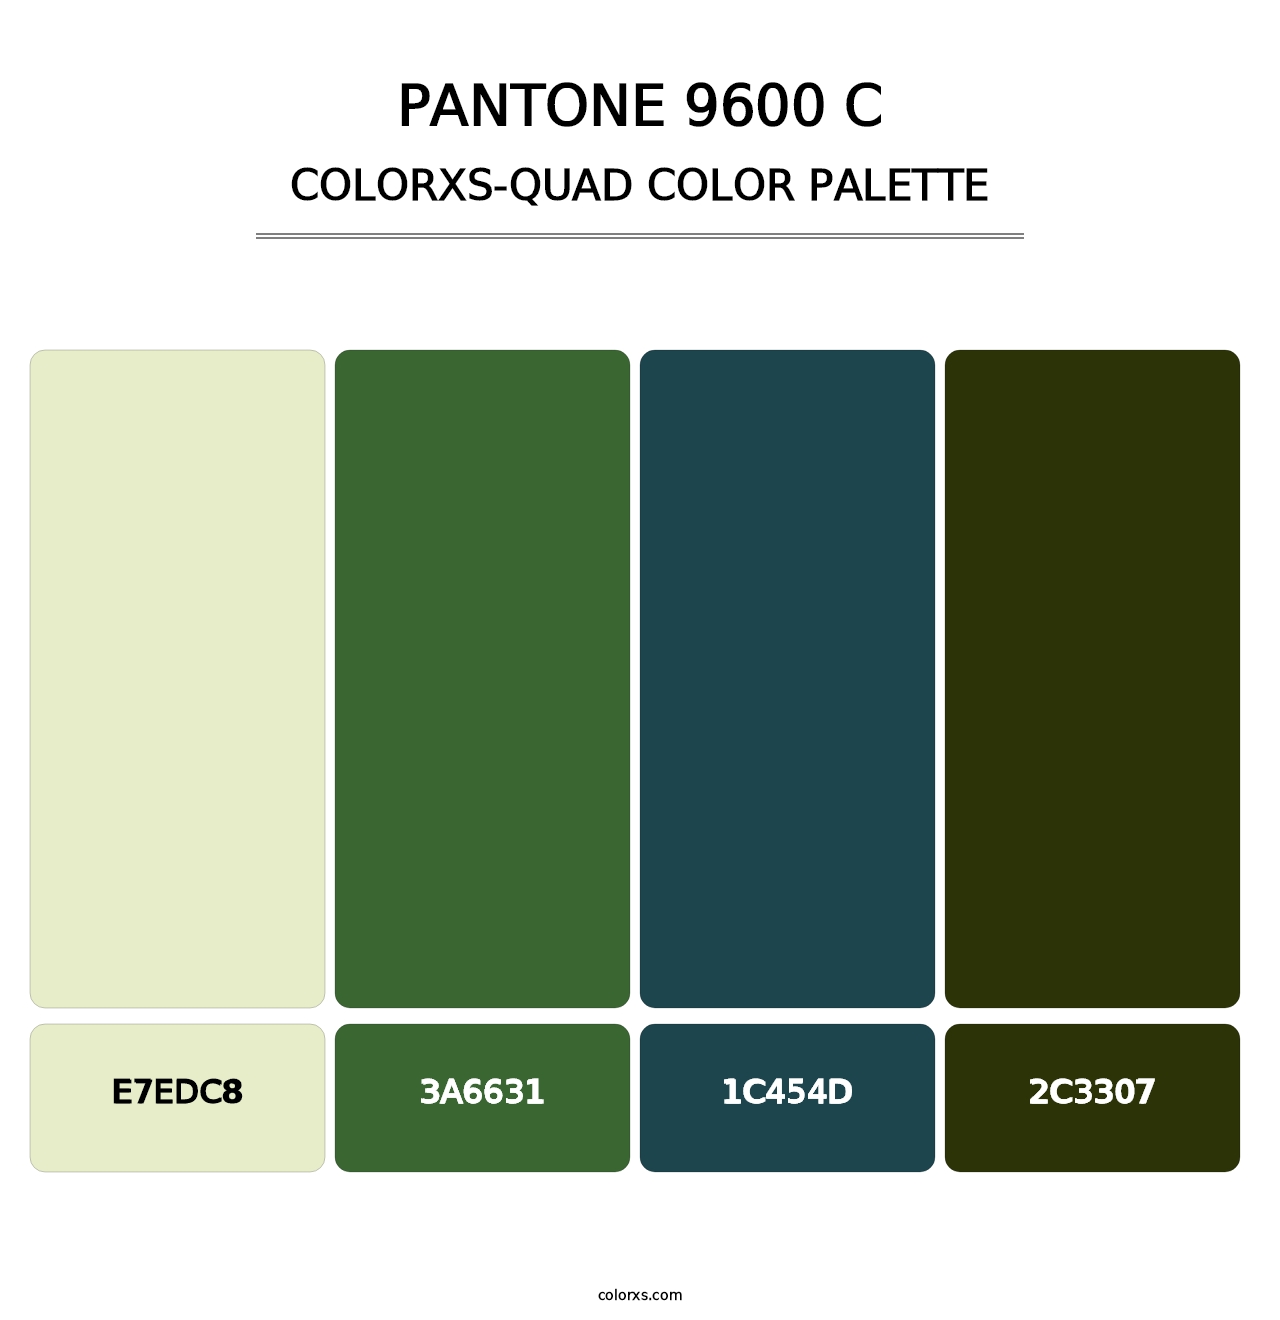 PANTONE 9600 C - Colorxs Quad Palette